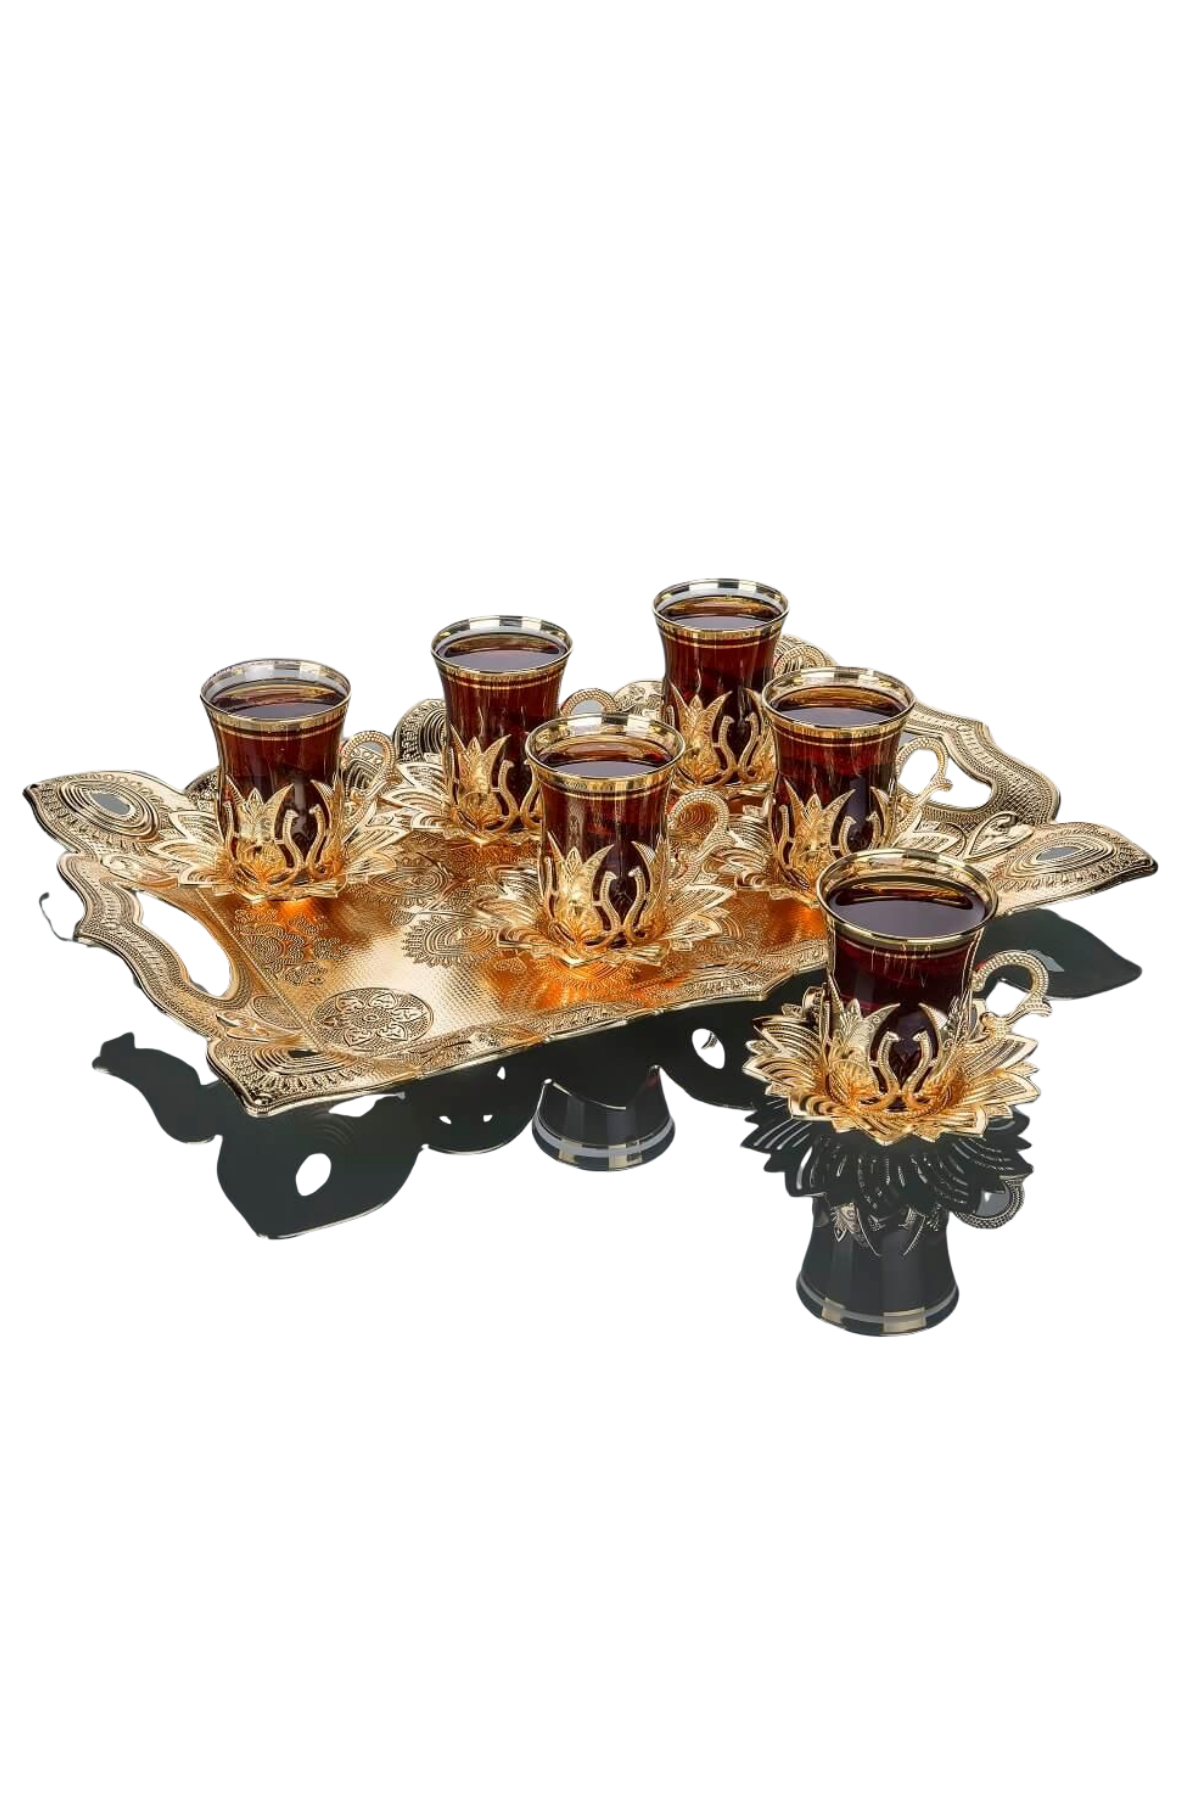 Turkish Tea Set - ShopAuthentique